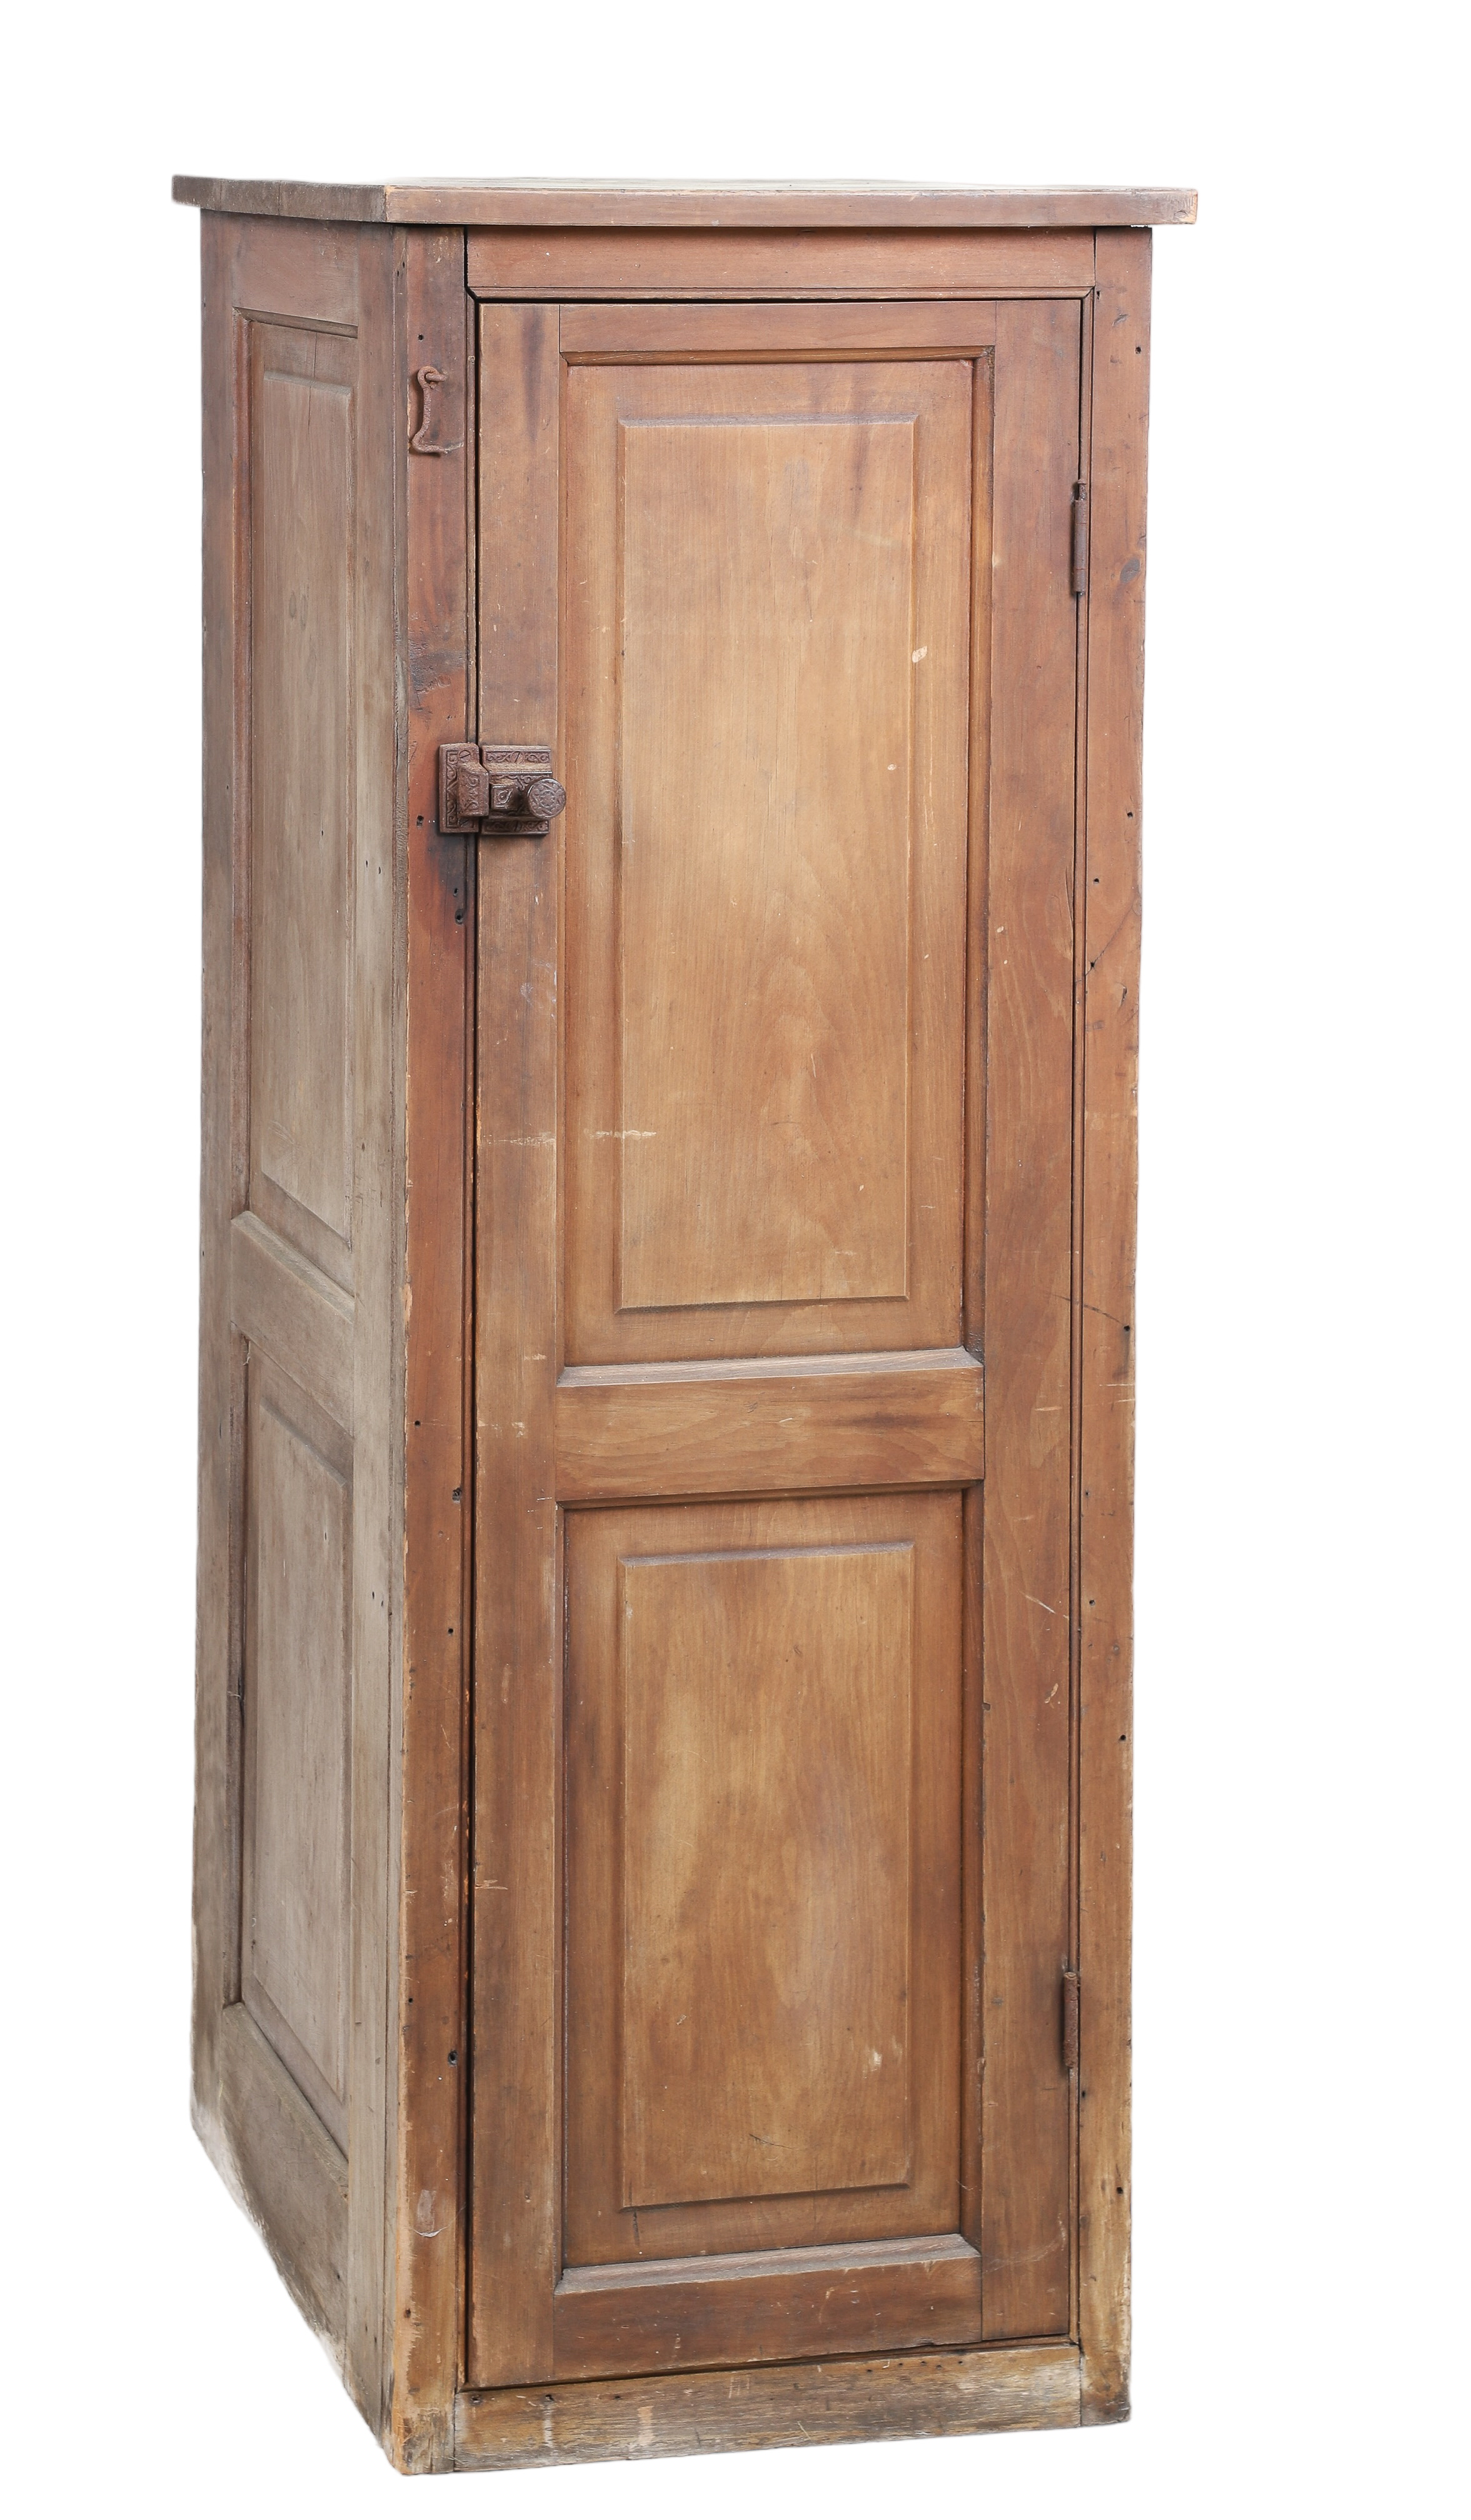 Pine paneled cabinet, single door